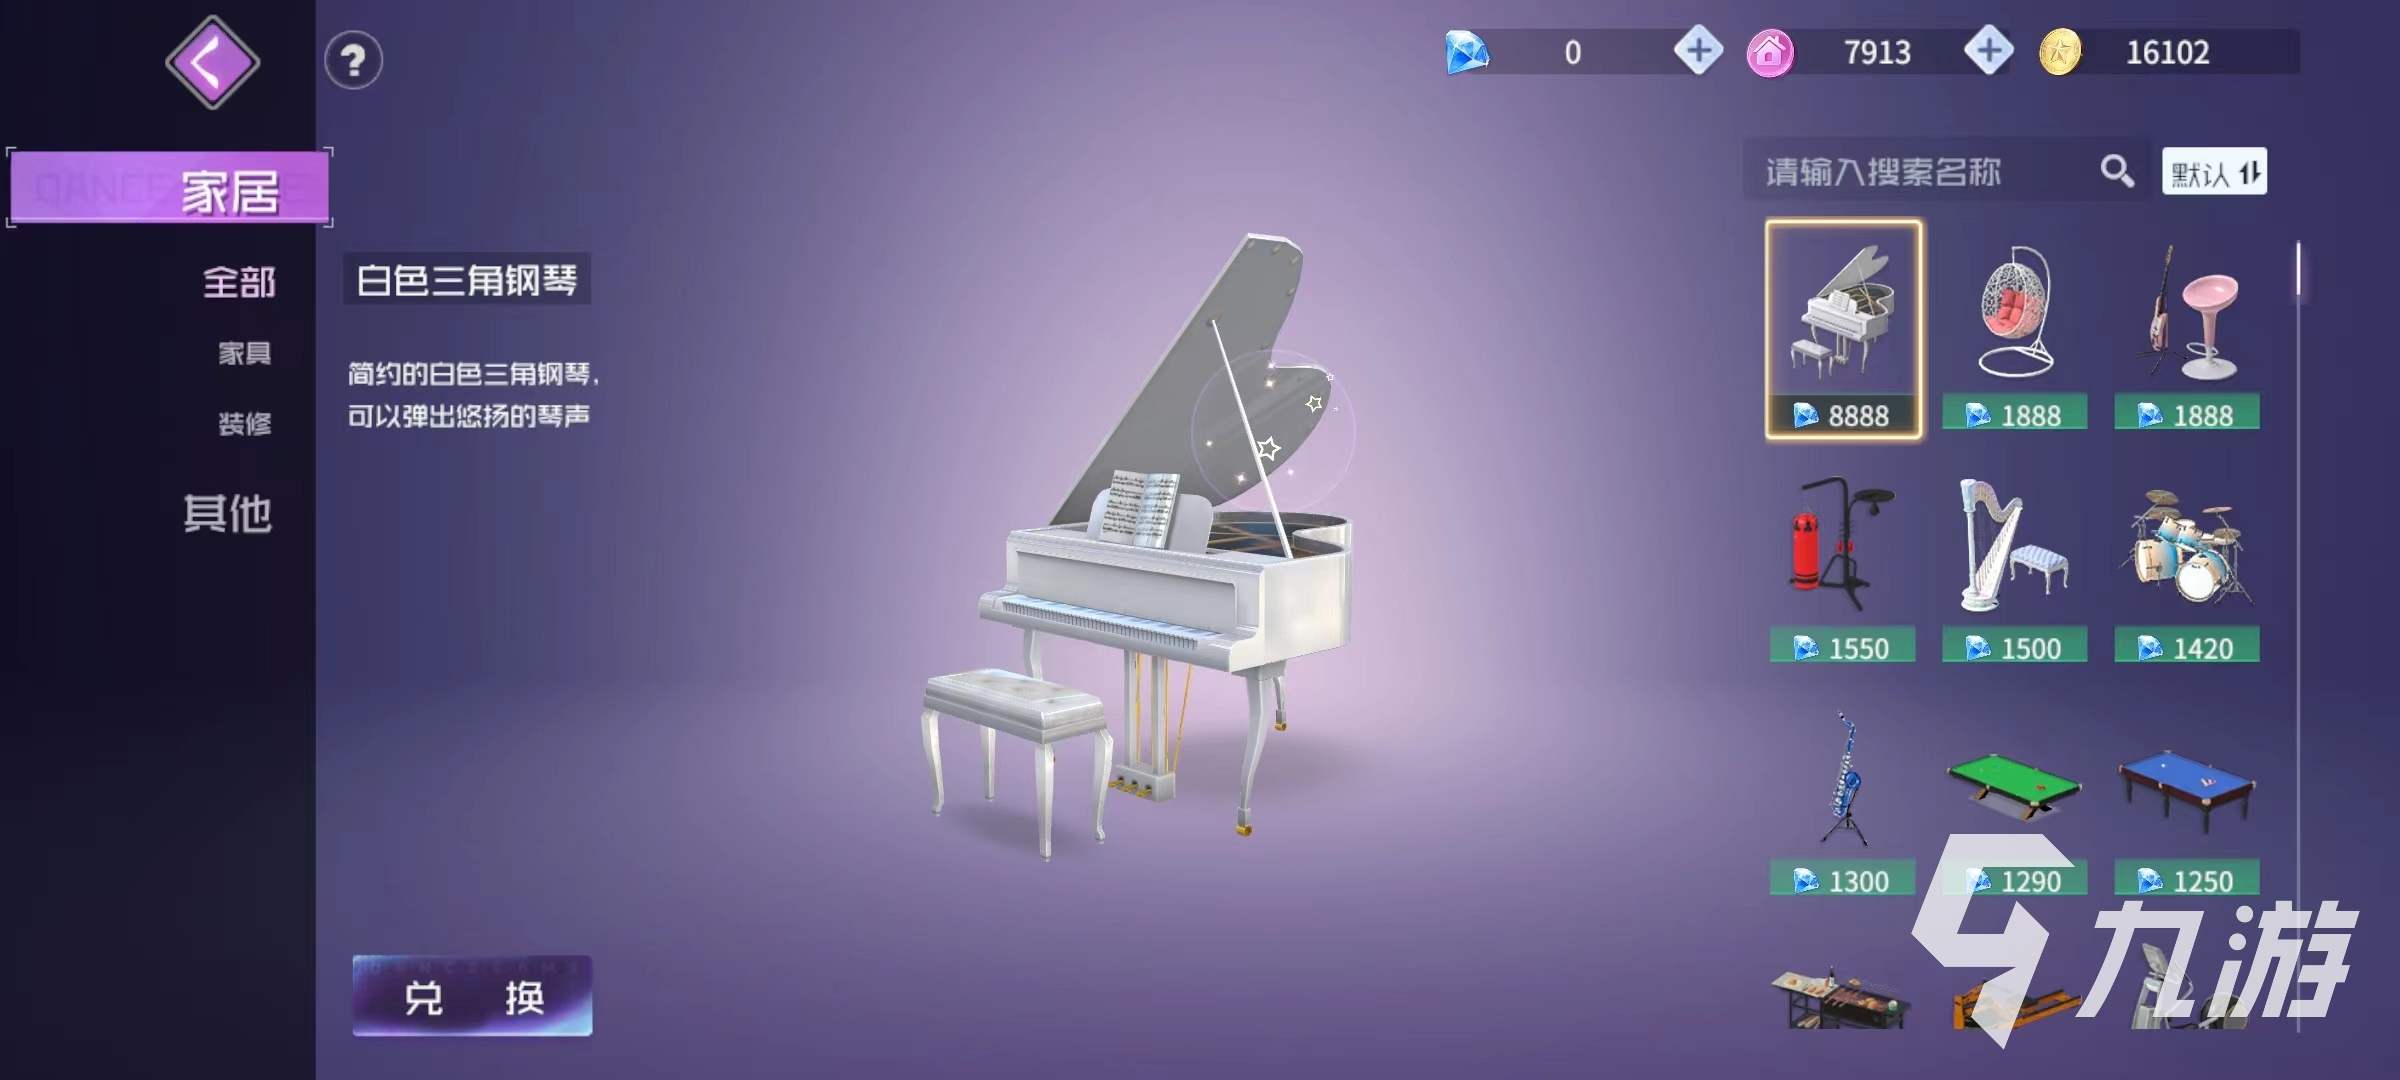 舞动星闪耀钢琴材料有哪些 钢琴获取途径分享